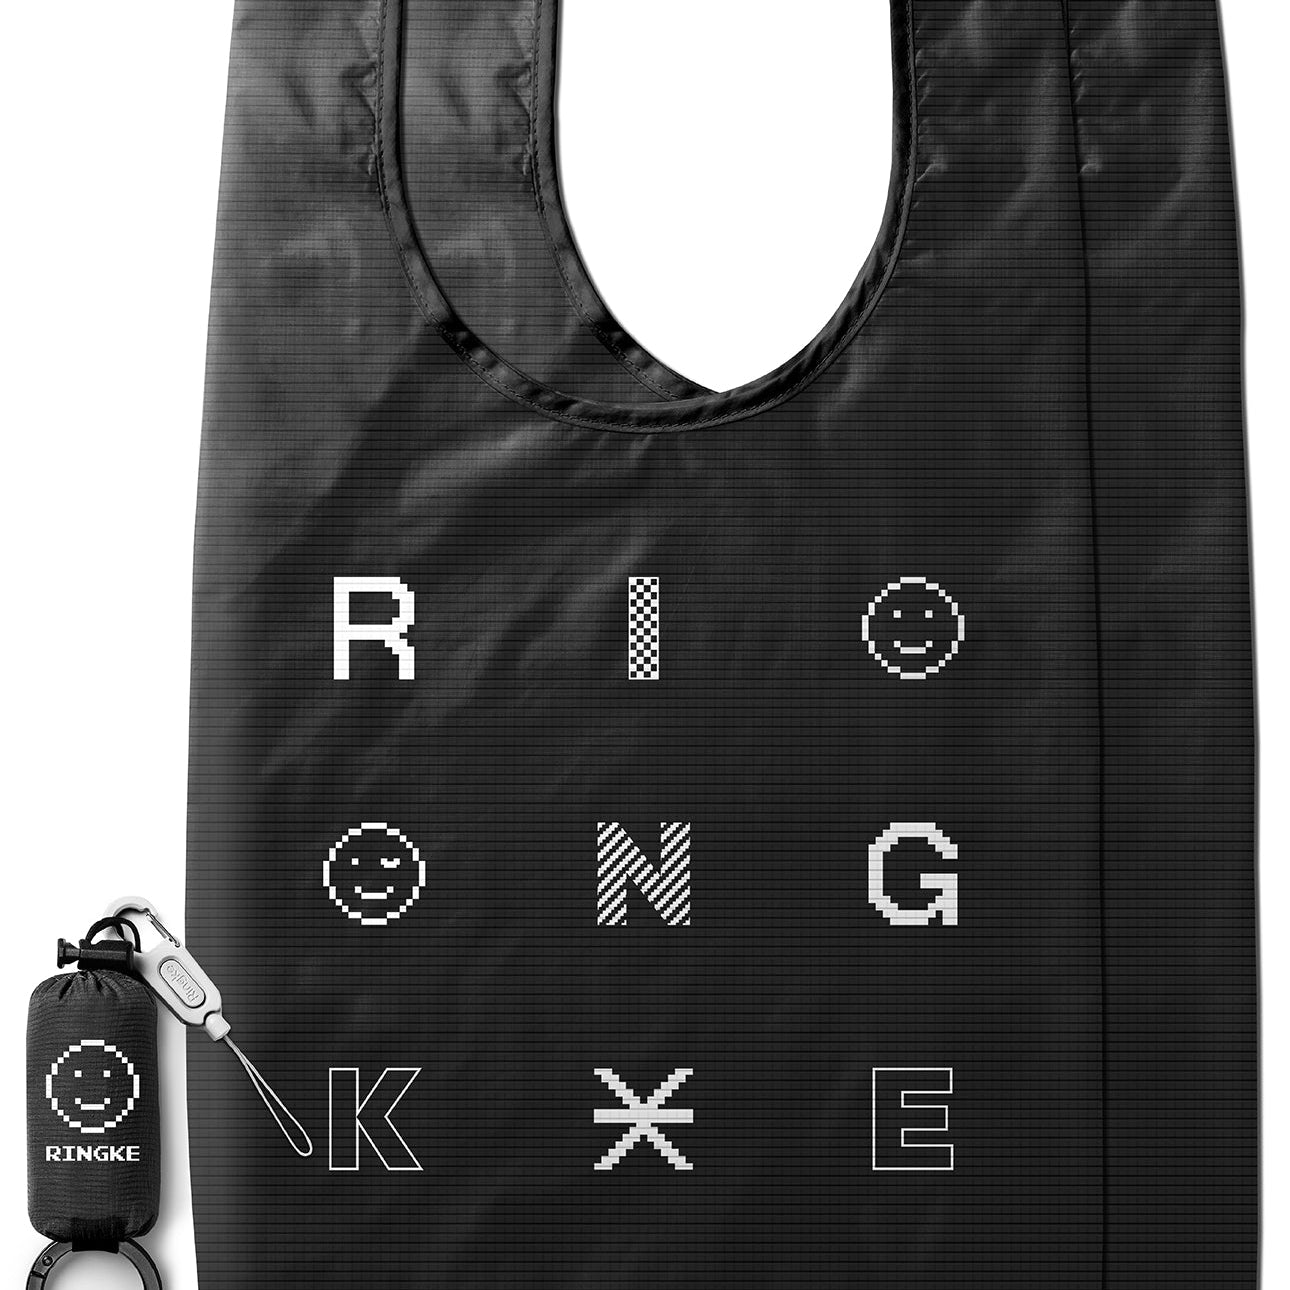 Ringke Day-Me Bag | Pixel